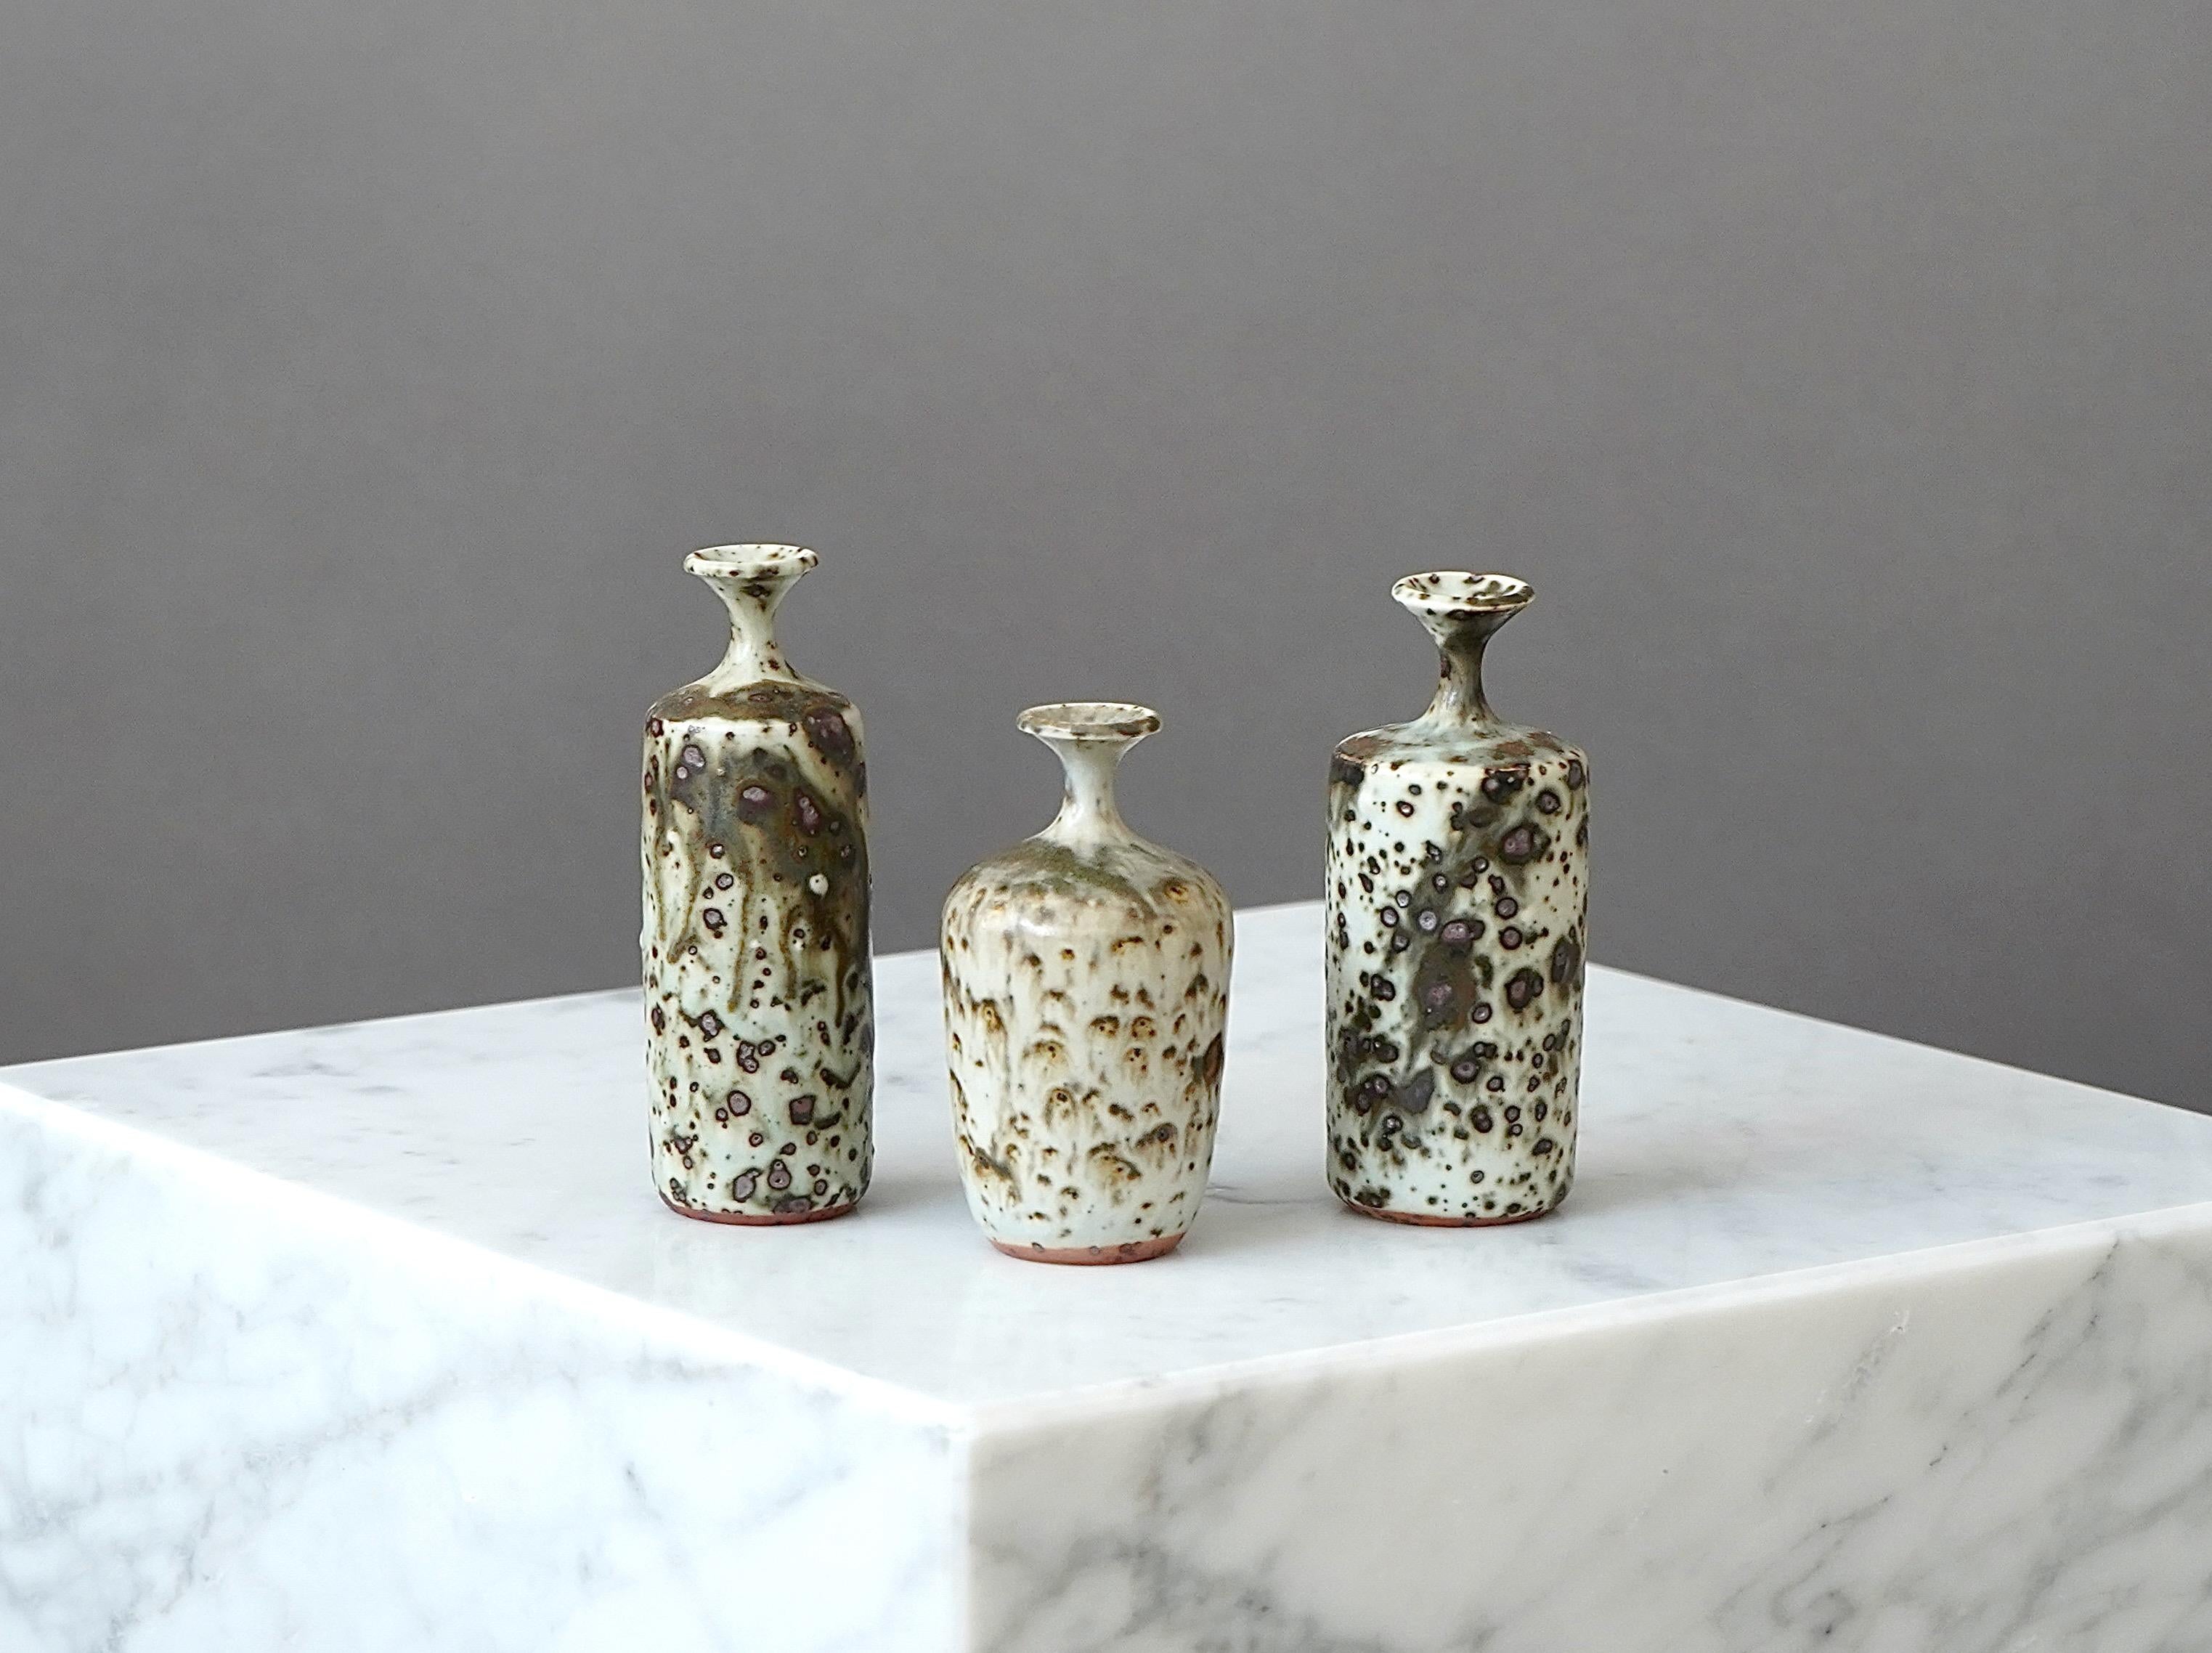 Eine Reihe schöner Vasen aus Steinzeug mit erstaunlicher Glasur.
Hergestellt von Rolf Palm, im Studio des Künstlers, Mölle, Schweden, 1973.

Ausgezeichneter Zustand. Eingeschnitten 'Palm / Mölle' und 'G3' für 1973'.

Rolf Palm (1930-2018) war einer